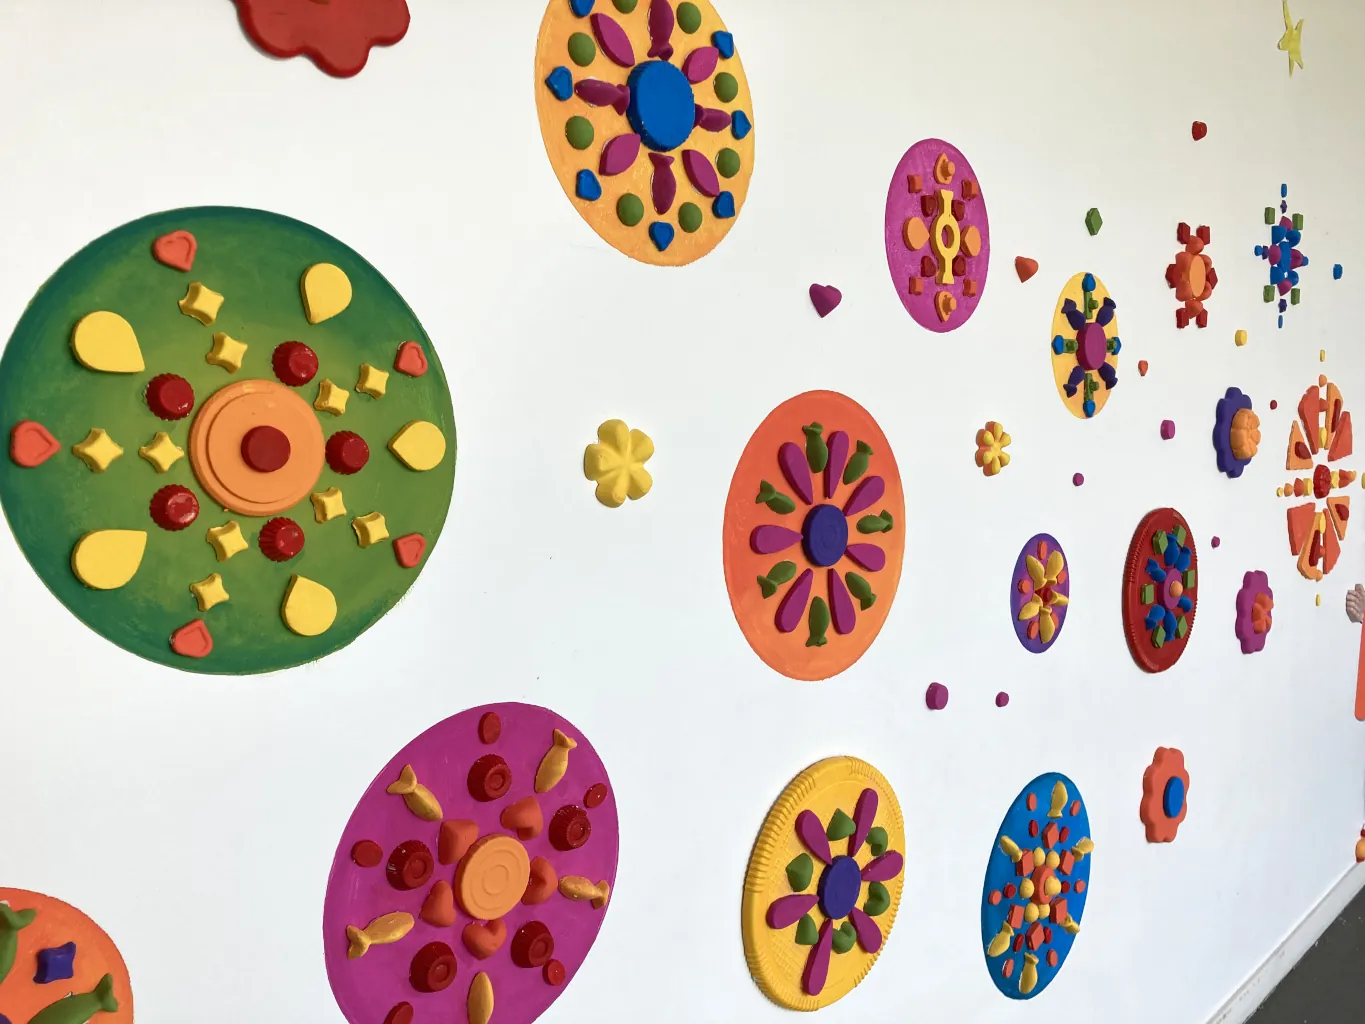 La fresque kit réalisée en Juin 2023 par les élèves de maternelle avec des emballages plastique - Atelier participatif de Karine Bracq, artiste plasticienne